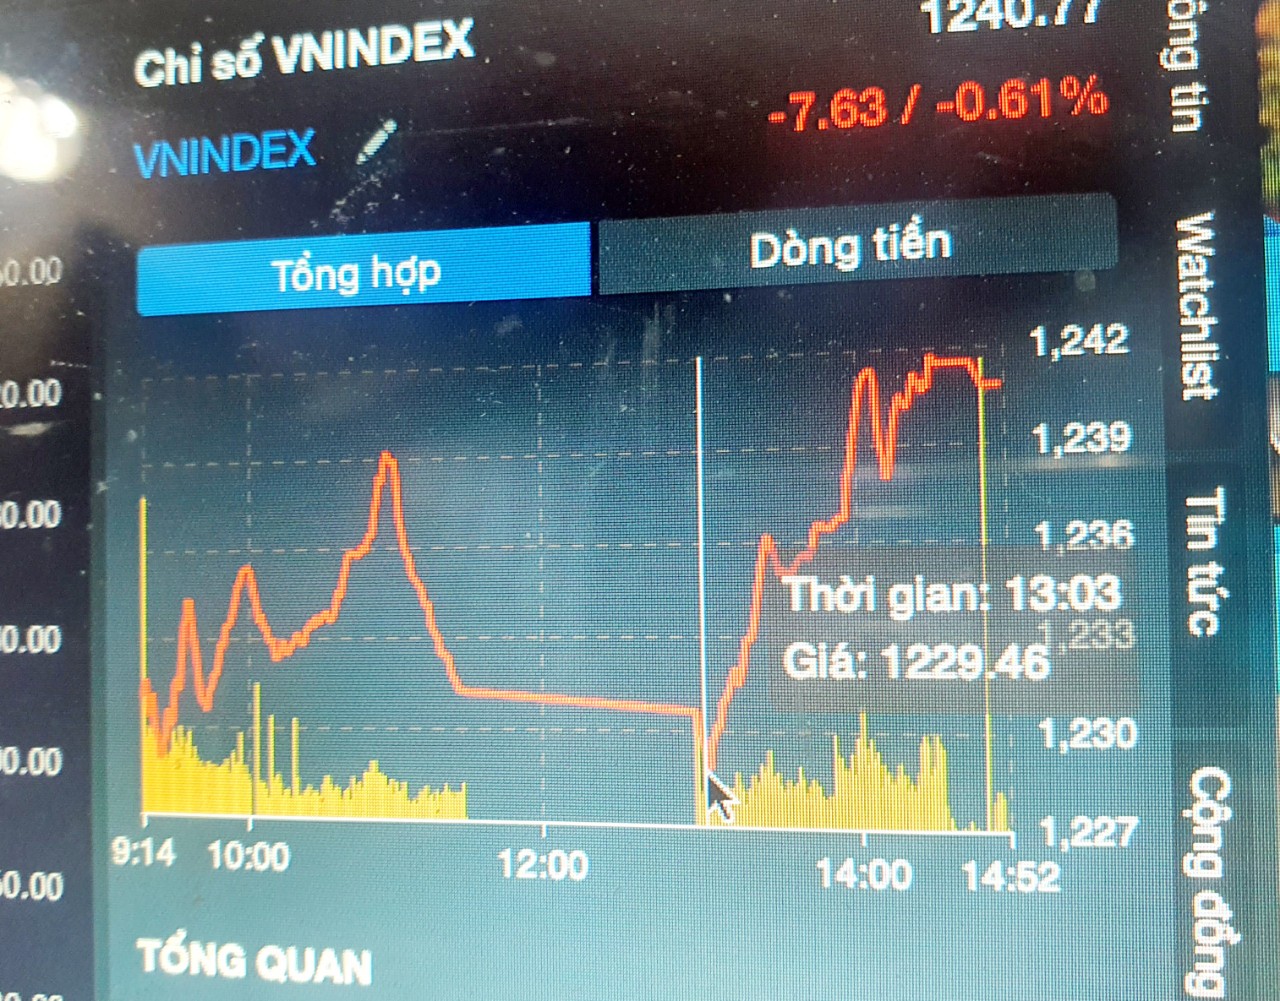 VN-Index biến động như tàu lượn, nhà đầu tư không tin nổi mắt mình! - Ảnh 1.